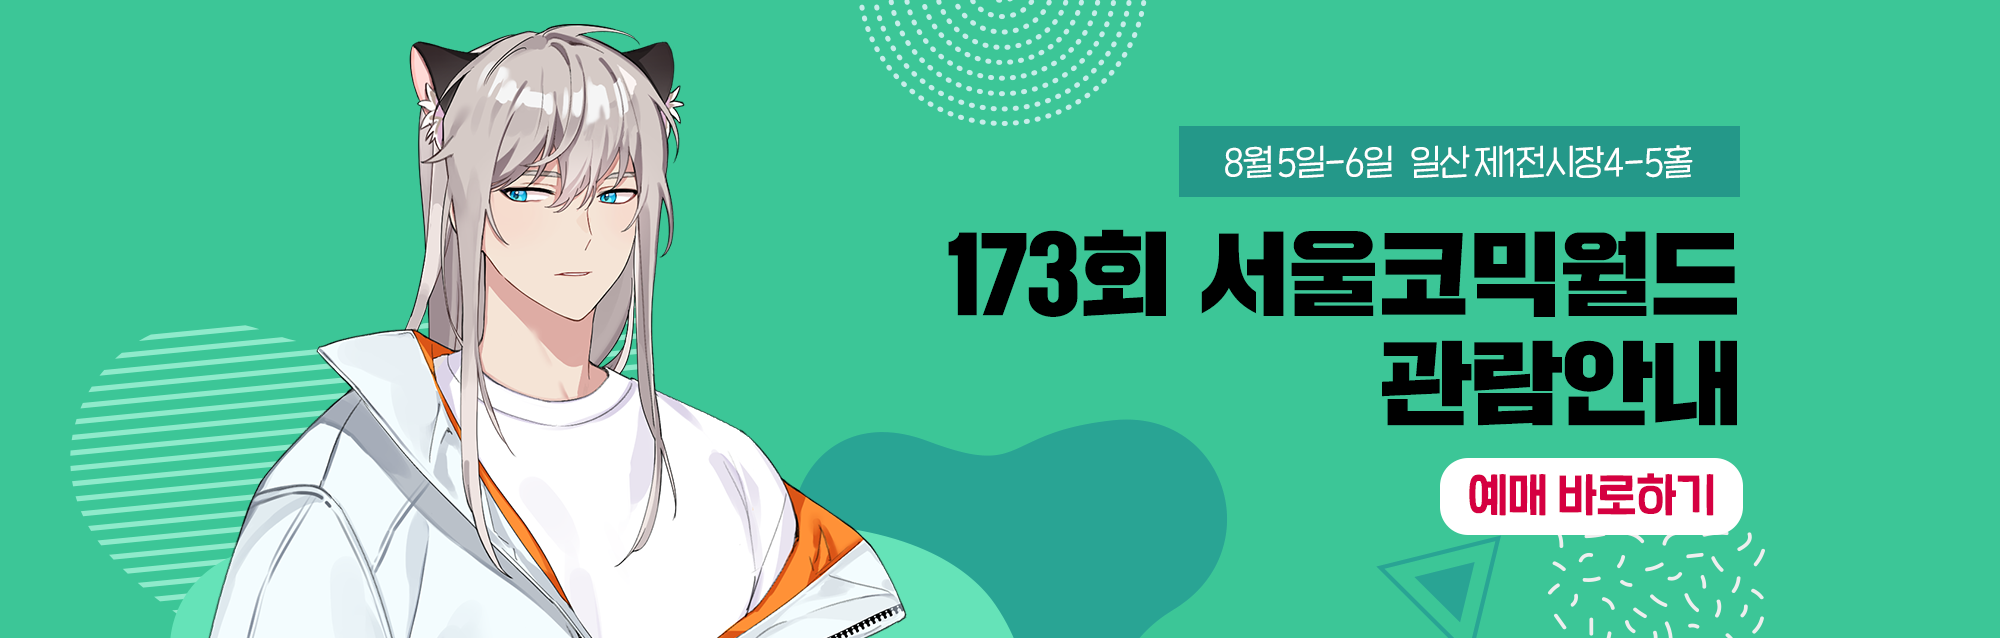 173회 서울코믹월드 관람안내 티켓예매